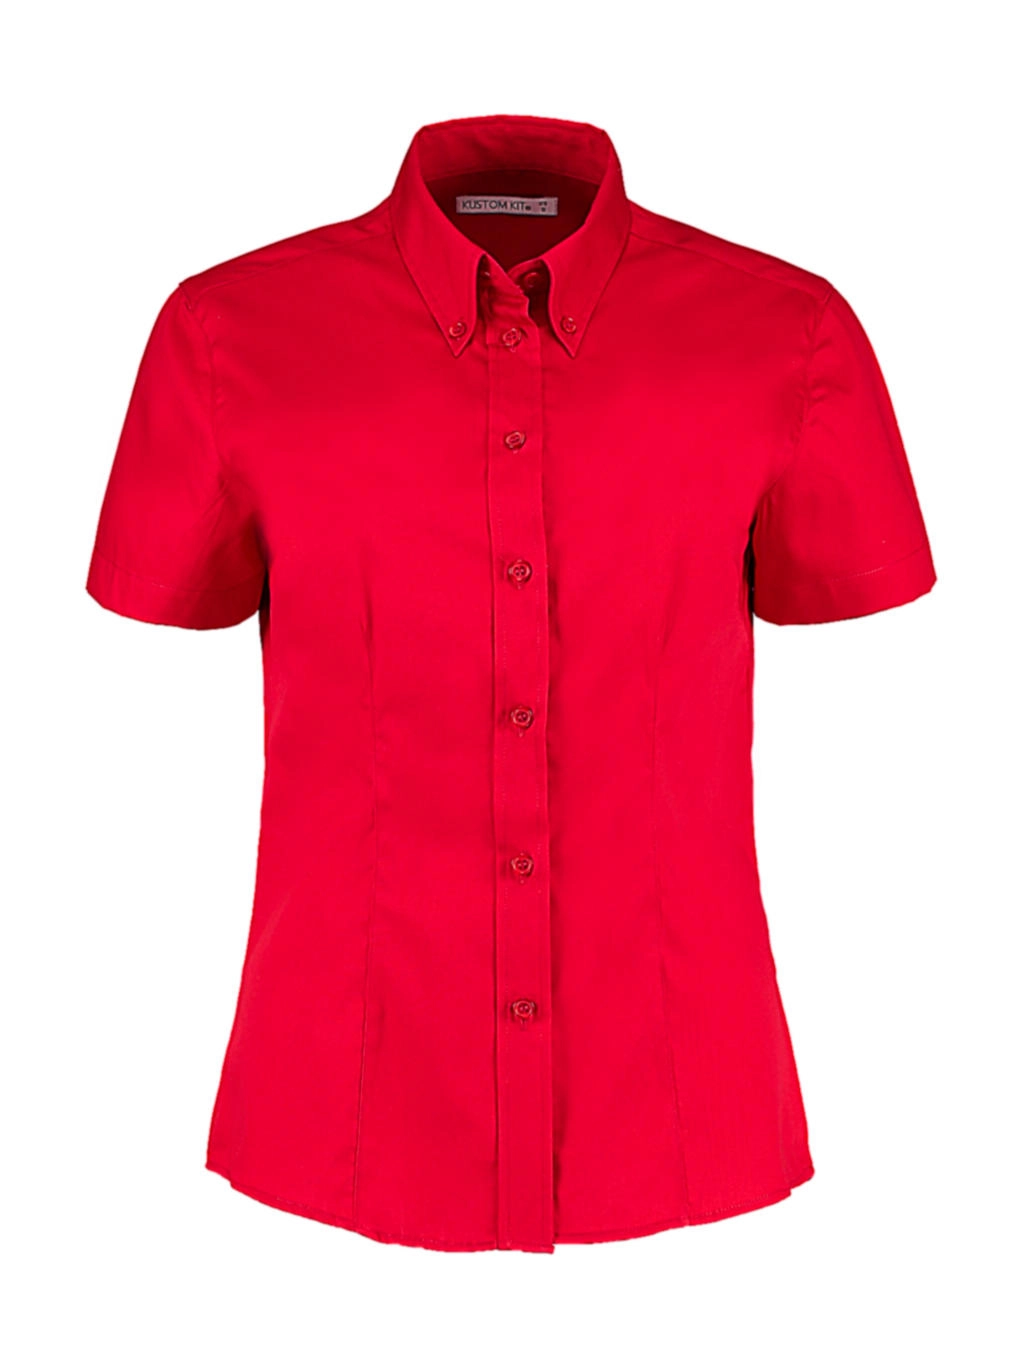 Women`s Tailored Fit Premium Oxford Shirt SSL zum Besticken und Bedrucken in der Farbe Red mit Ihren Logo, Schriftzug oder Motiv.